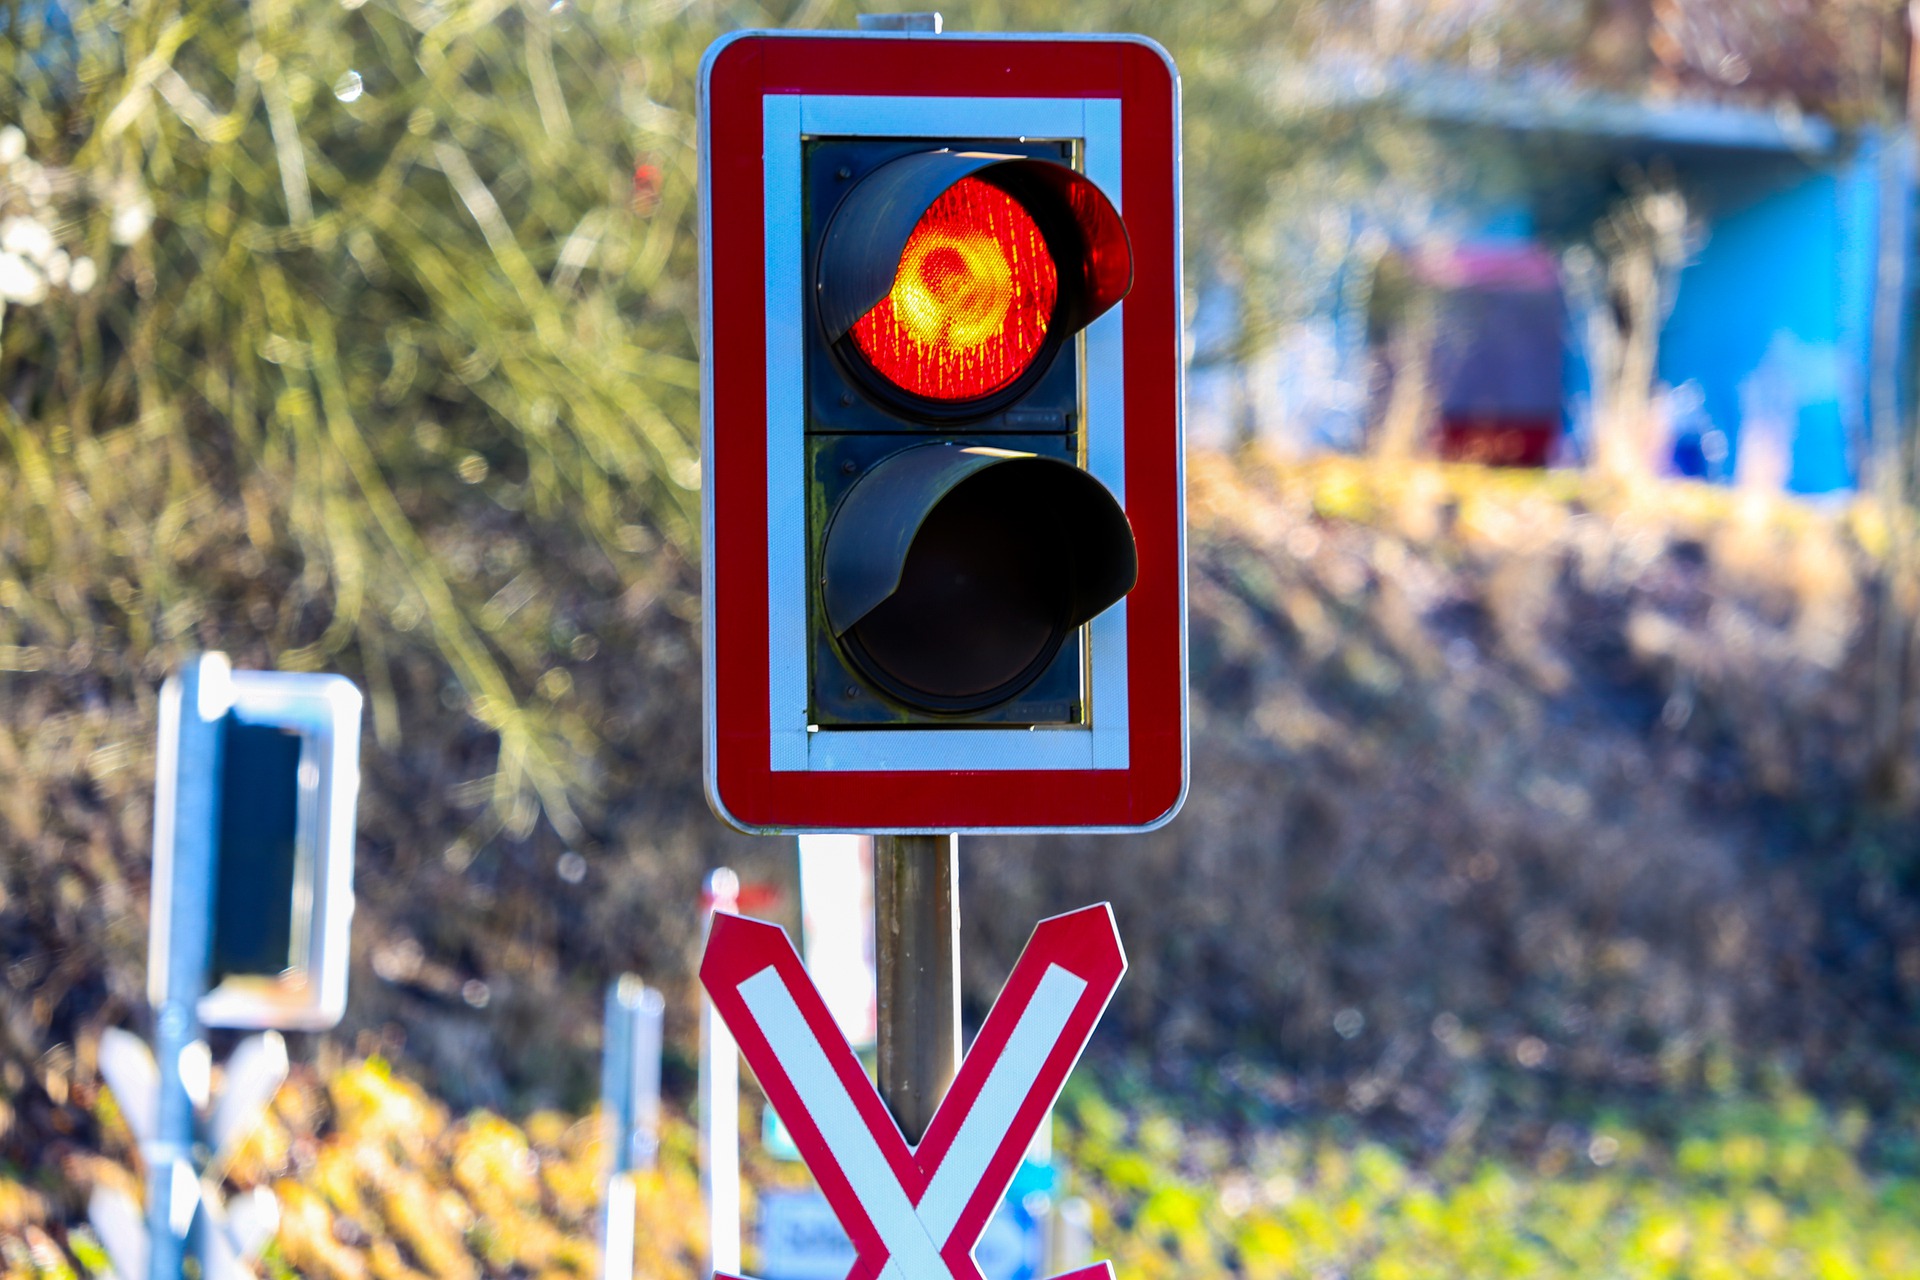 Sofortige Schließung des unbeschrankten Bahnübergang in Gerlenhofen? – Nicht mit uns!